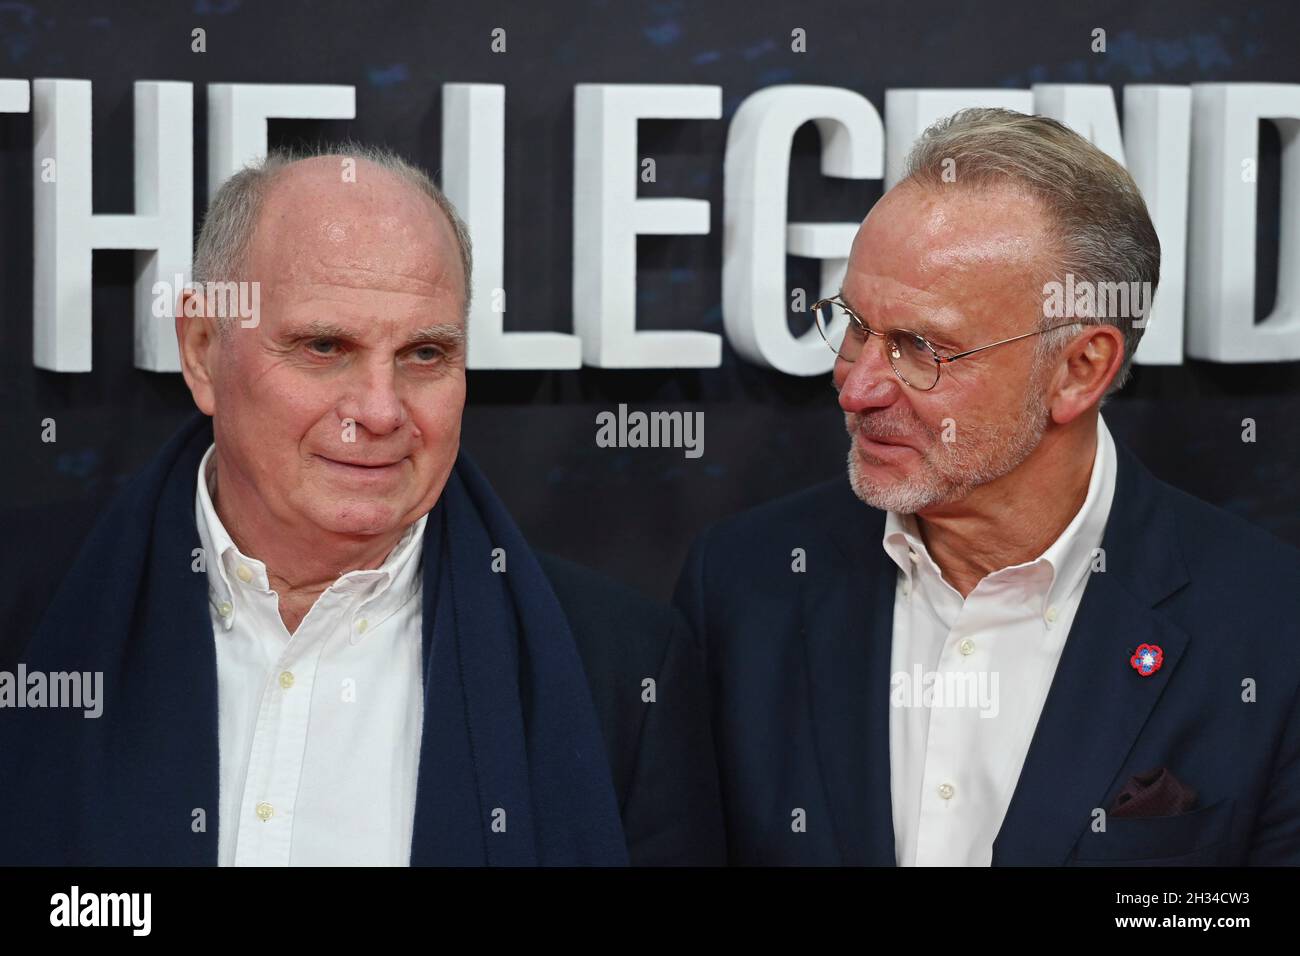 De gauche à droite : Uli HOENESS (Höness, Président honoraire du FC Bayern Munich), Karl Heinz RUMMENIGGE (ancien PDG).Première partie pour l'Amazonie documentaire original FC BAYERN - DERRIÈRE LA LÉGENDE le 25 octobre 2021 à l'Arri Kino à Munich.Moquette rouge. Banque D'Images